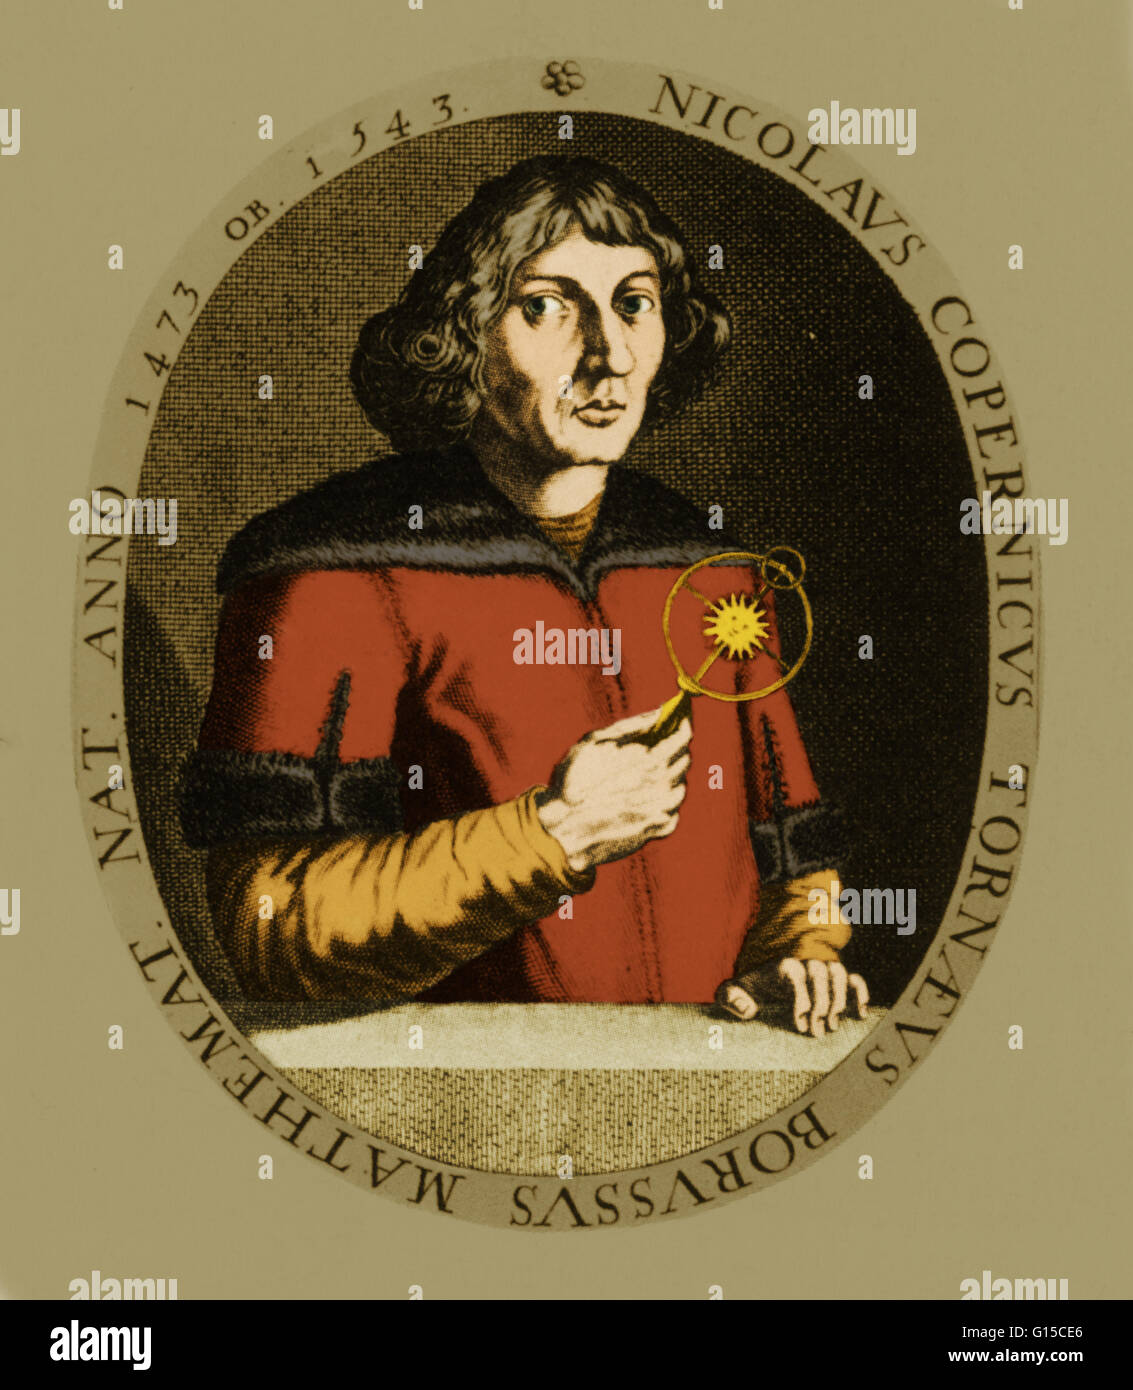 Nicolaus Copernicus (19 Februar 1473-24 Mai 1543) war eine polnische Renaissance Mathematiker und Astronom, ein preußischer Abstammung, formuliert ein Modell des Universums, die die Sonne platziert, anstatt die Erde im Zentrum des Universums. Dieses syste Stockfoto